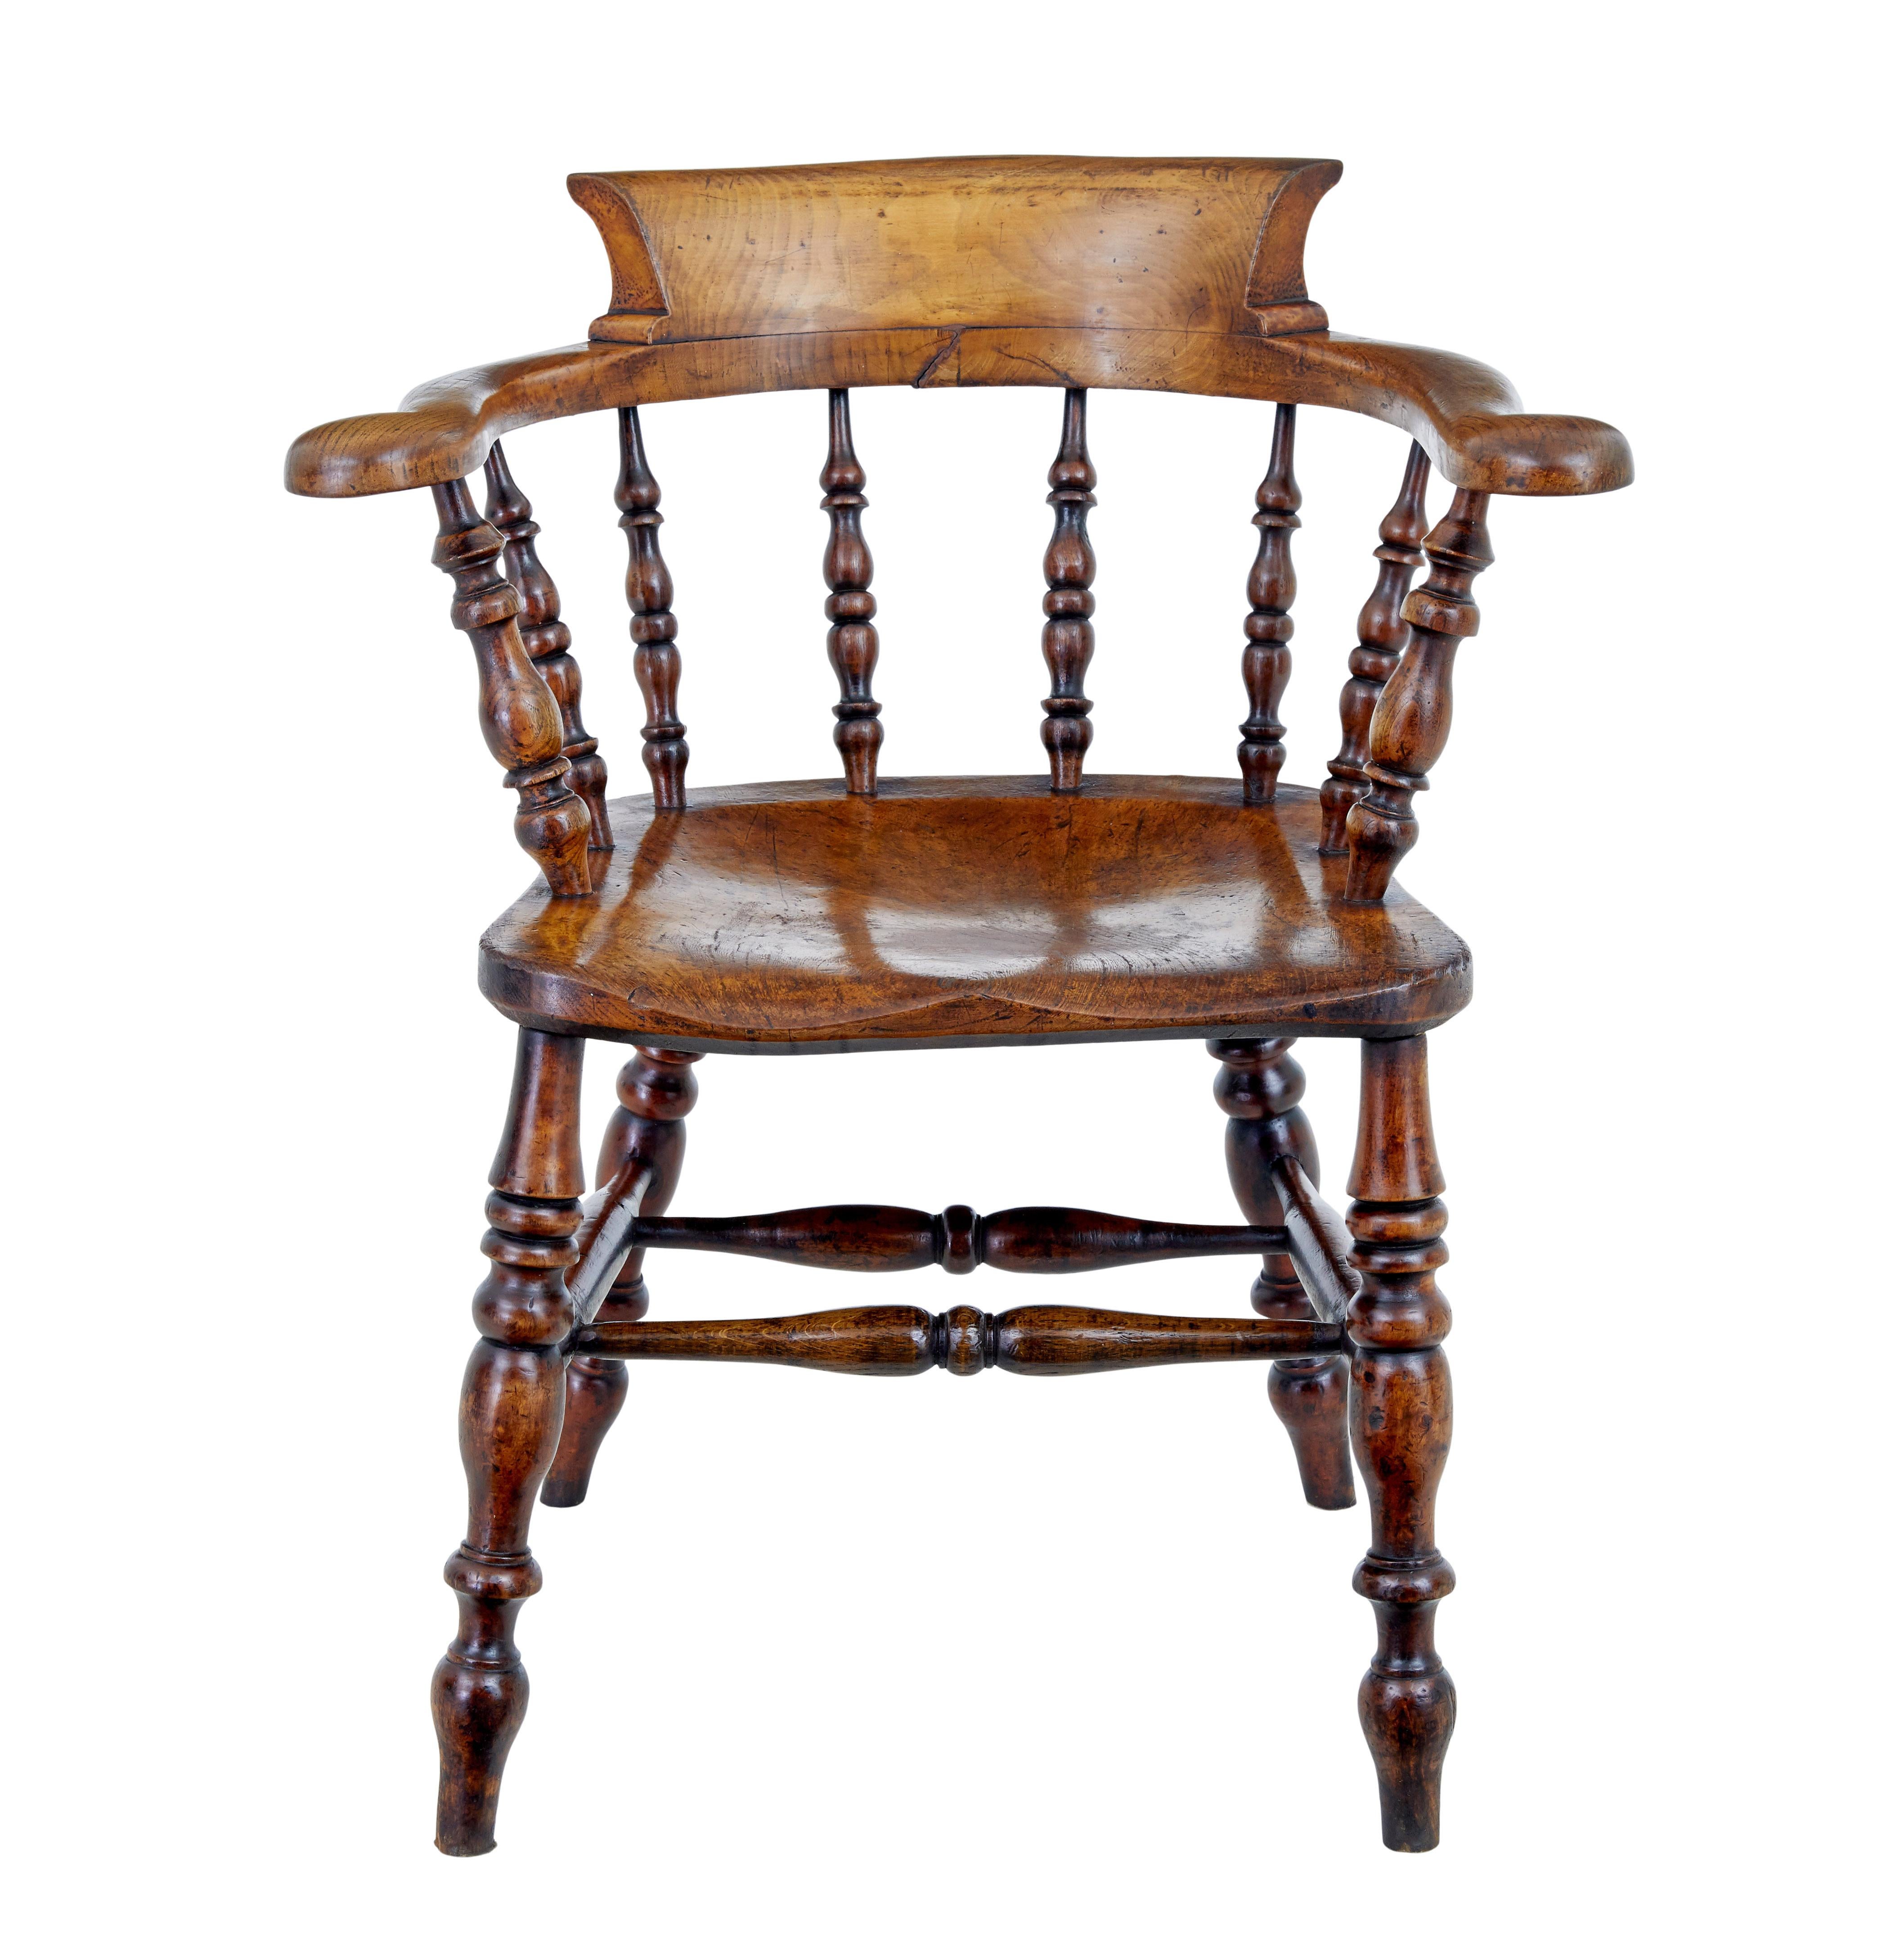 Ulmenkapitänssessel aus der Mitte des 19. Jahrhunderts, um 1860.

Charaktervoller Sessel aus massiver Ulme in guter Qualität.  Geformte Rückenlehne und Armlehne, verbunden mit gedrechselten Spindeln an der Sitzfläche.  Die gedrechselten Beine sind